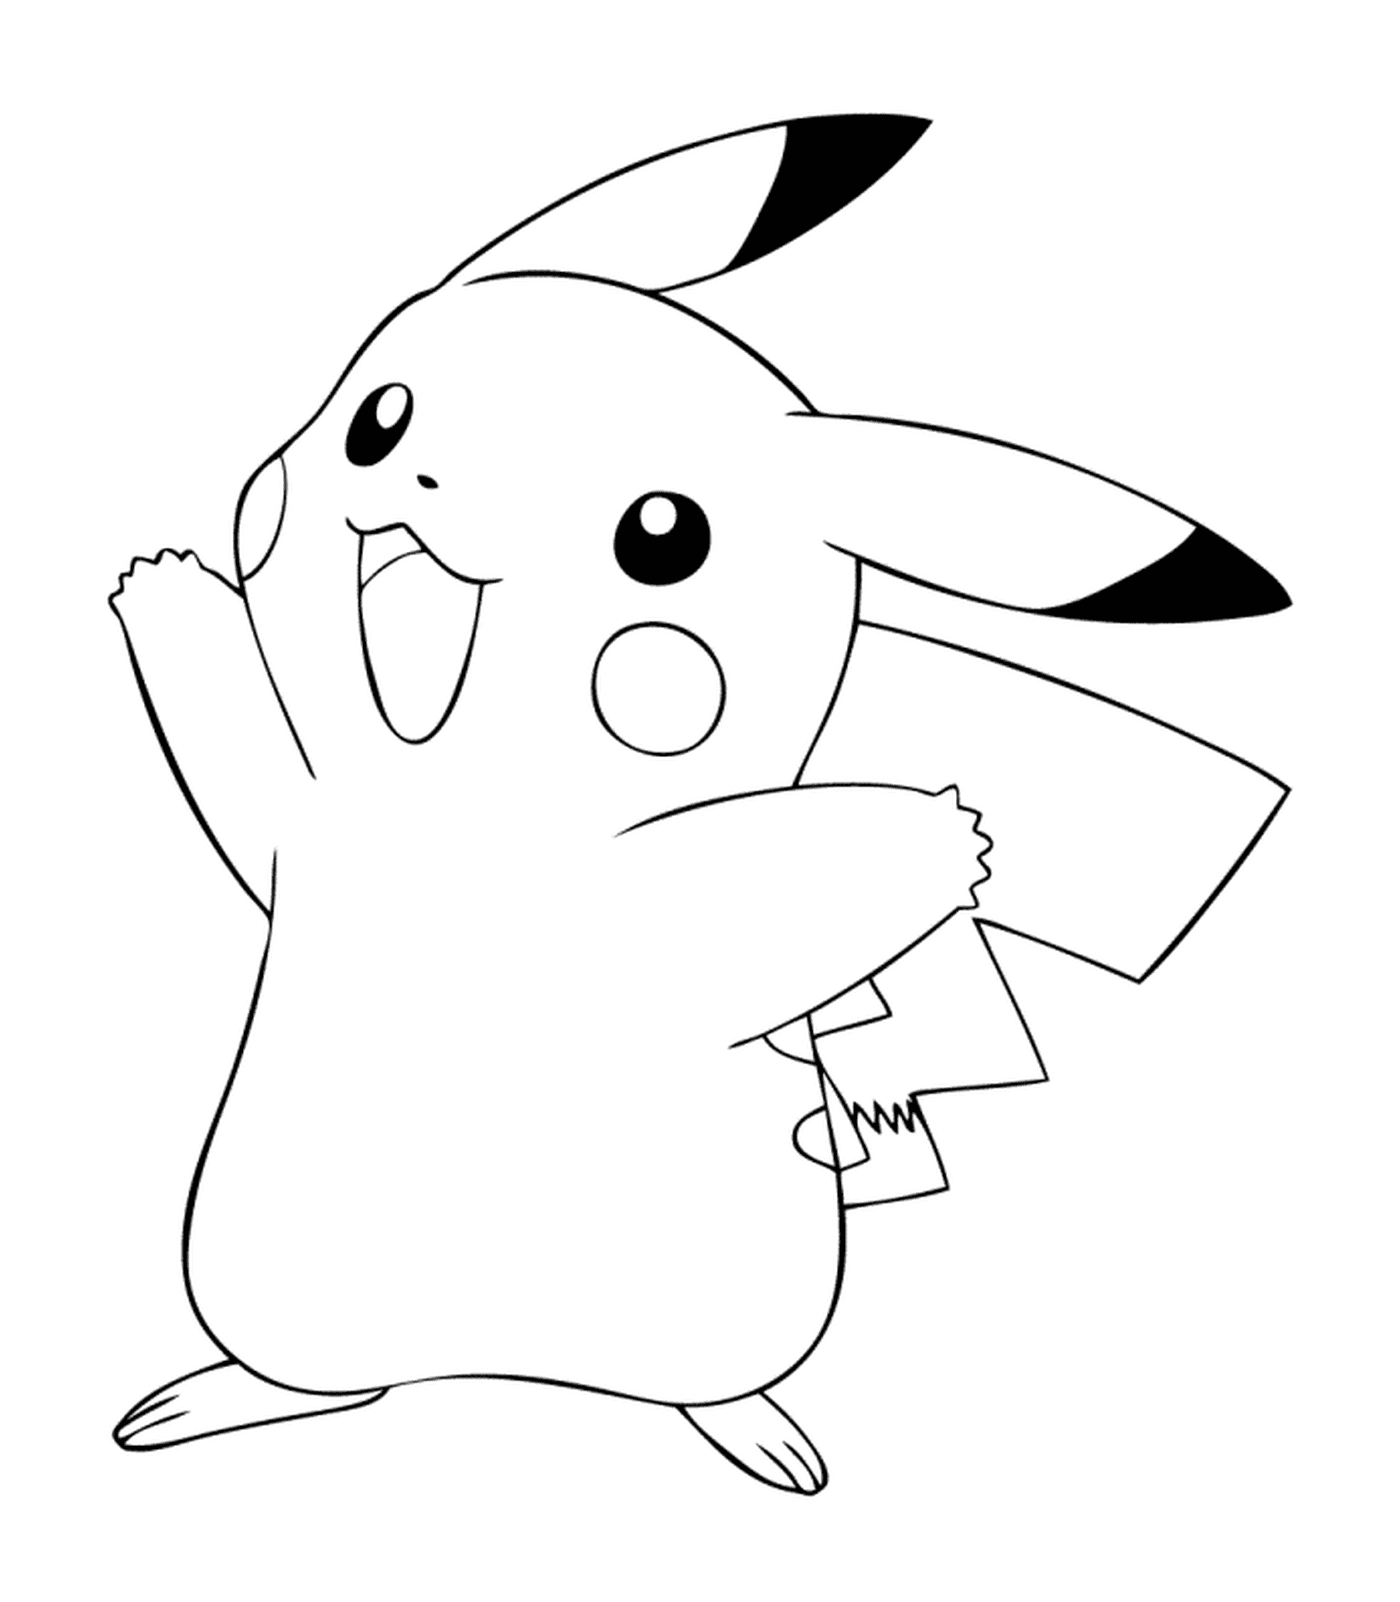  Pikachu faz um sinal amigável 